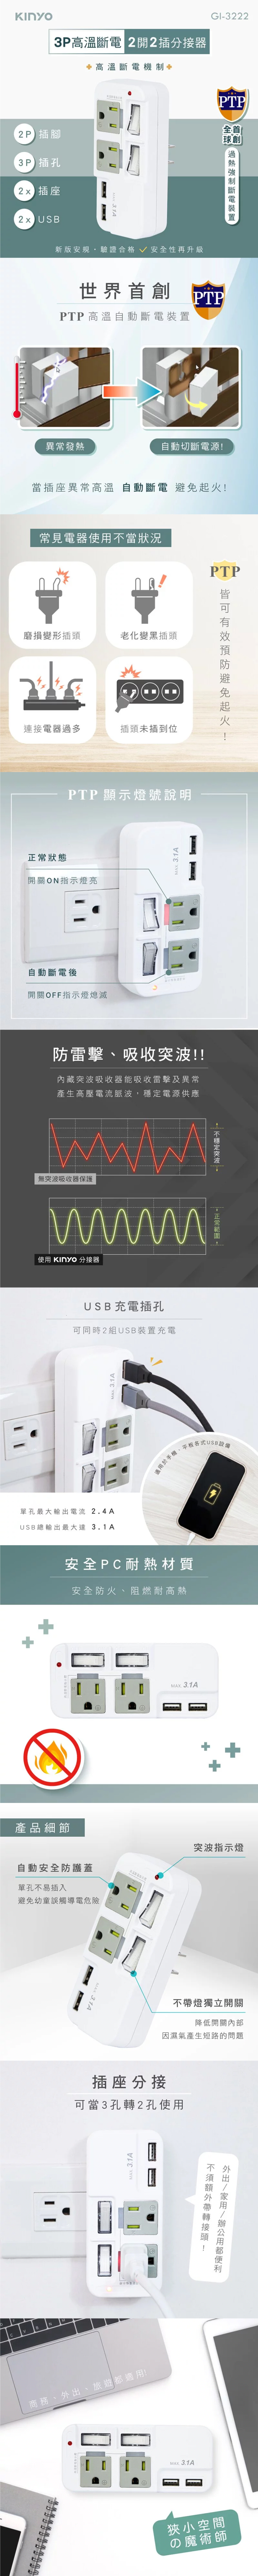 USB kinyo 獨立開關 高溫斷電 防雷 高溫斷電